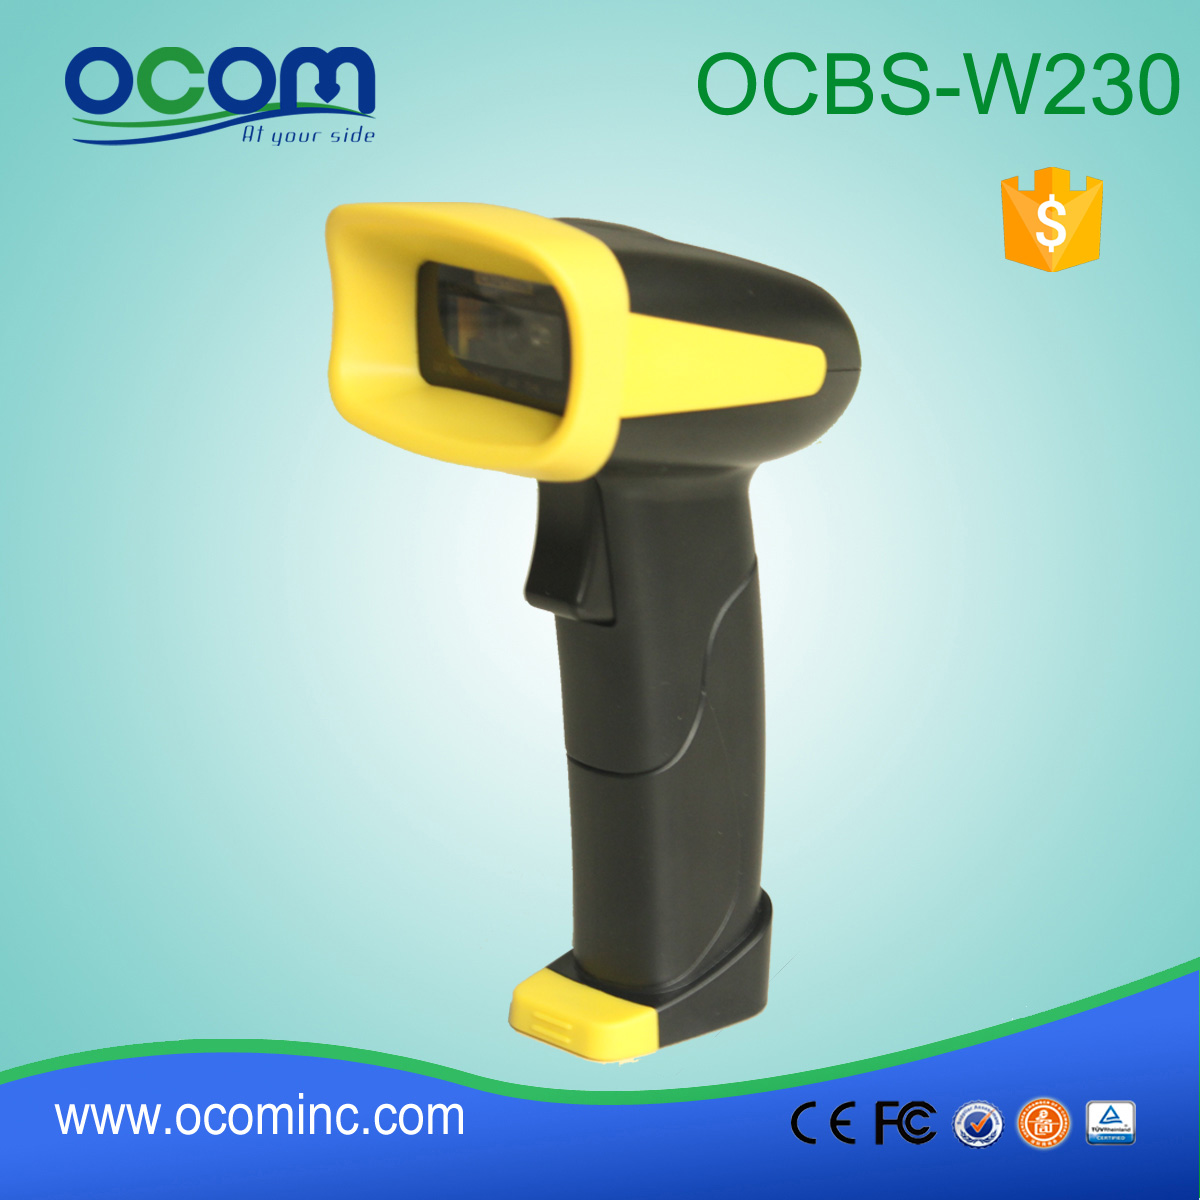 Памяти Ручной сканер штрих-кода для управления складом OCBs-W230